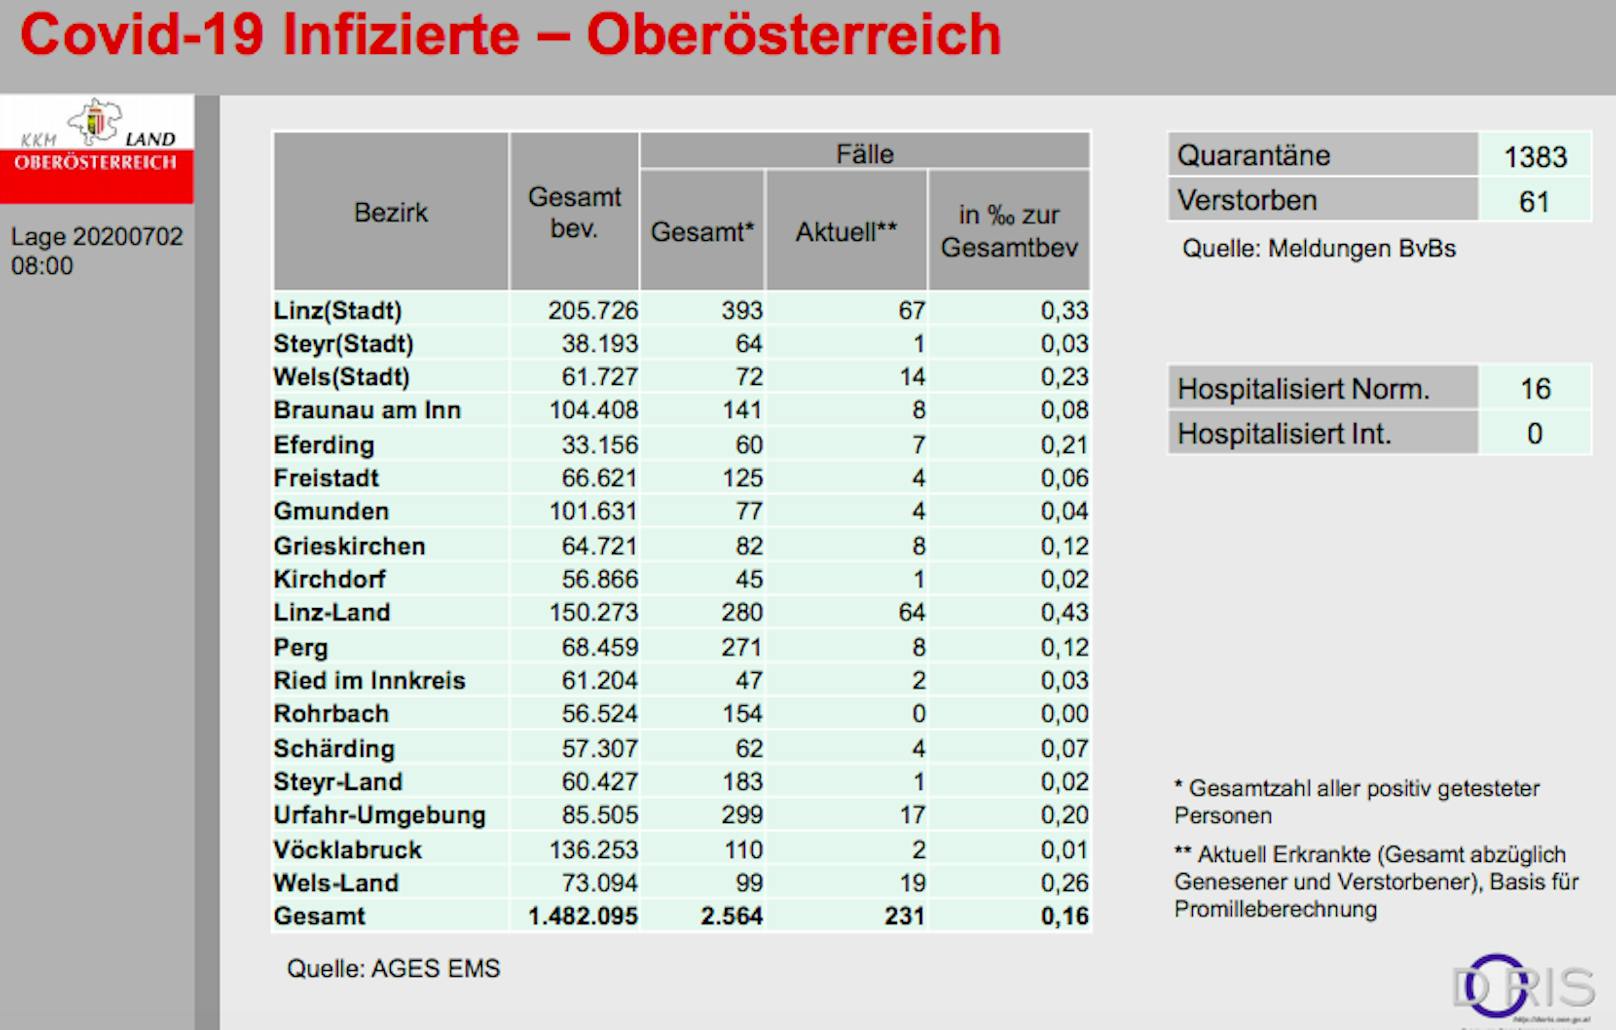 Aktuell gibt es 231 positiv getestete Menschen in Oberösterreich.